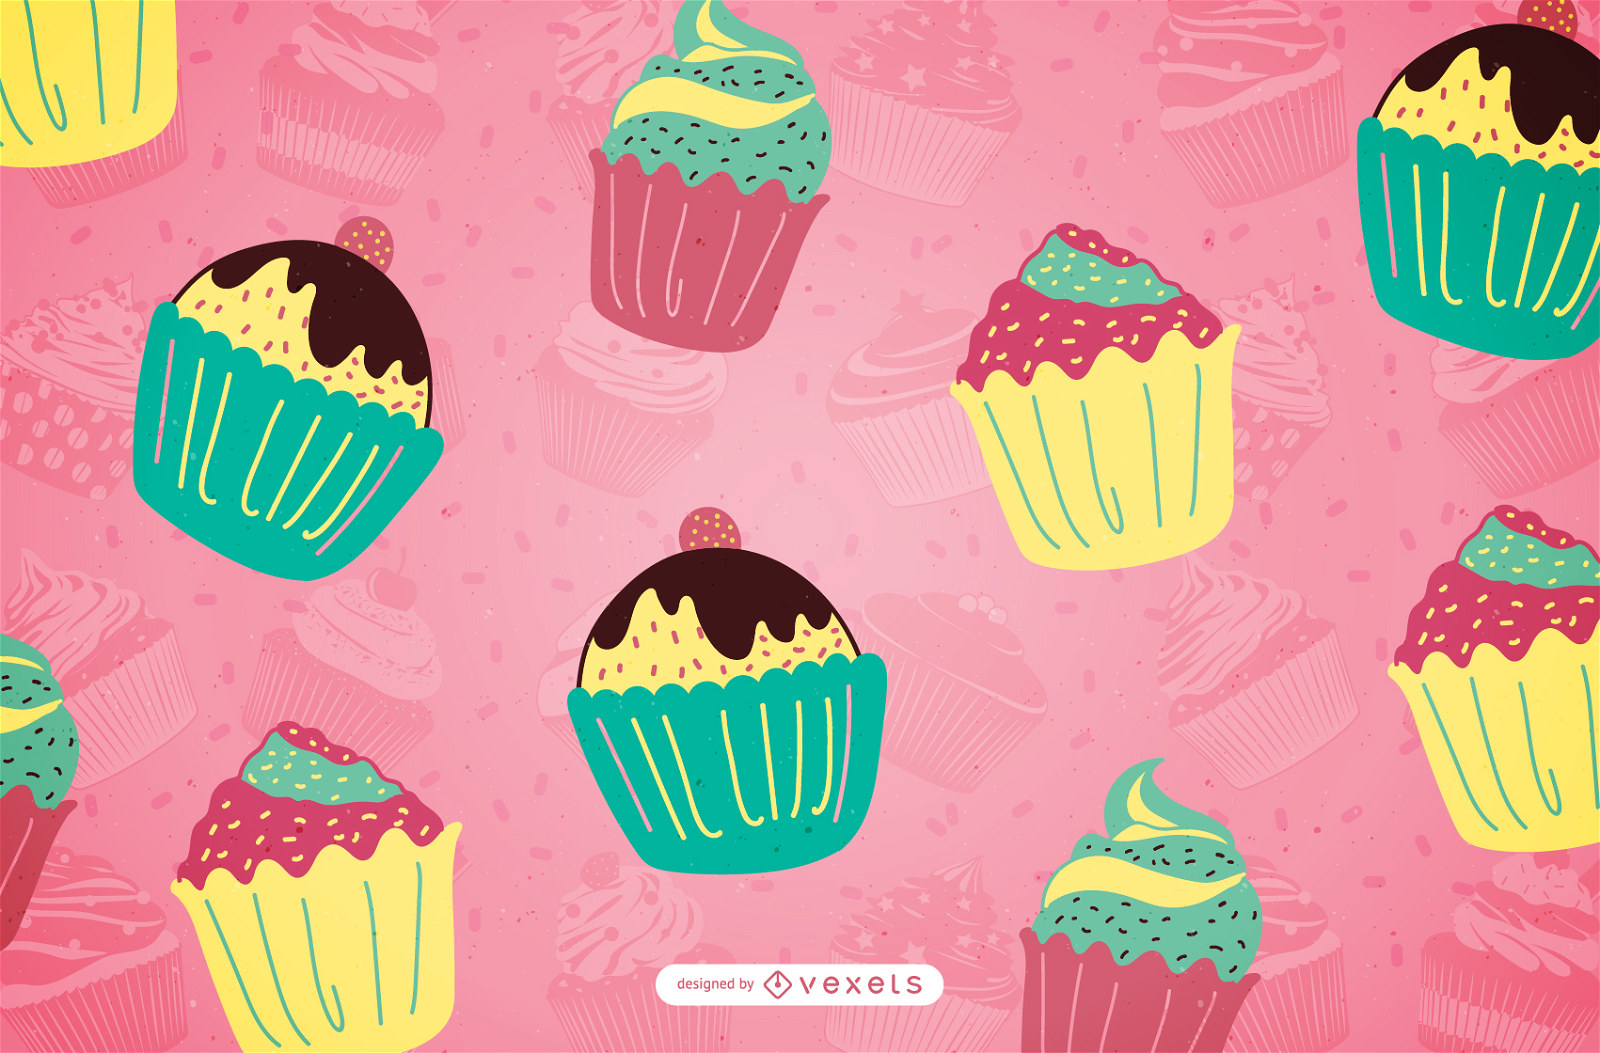 Hand drawn cupcake pattern in pastel tones